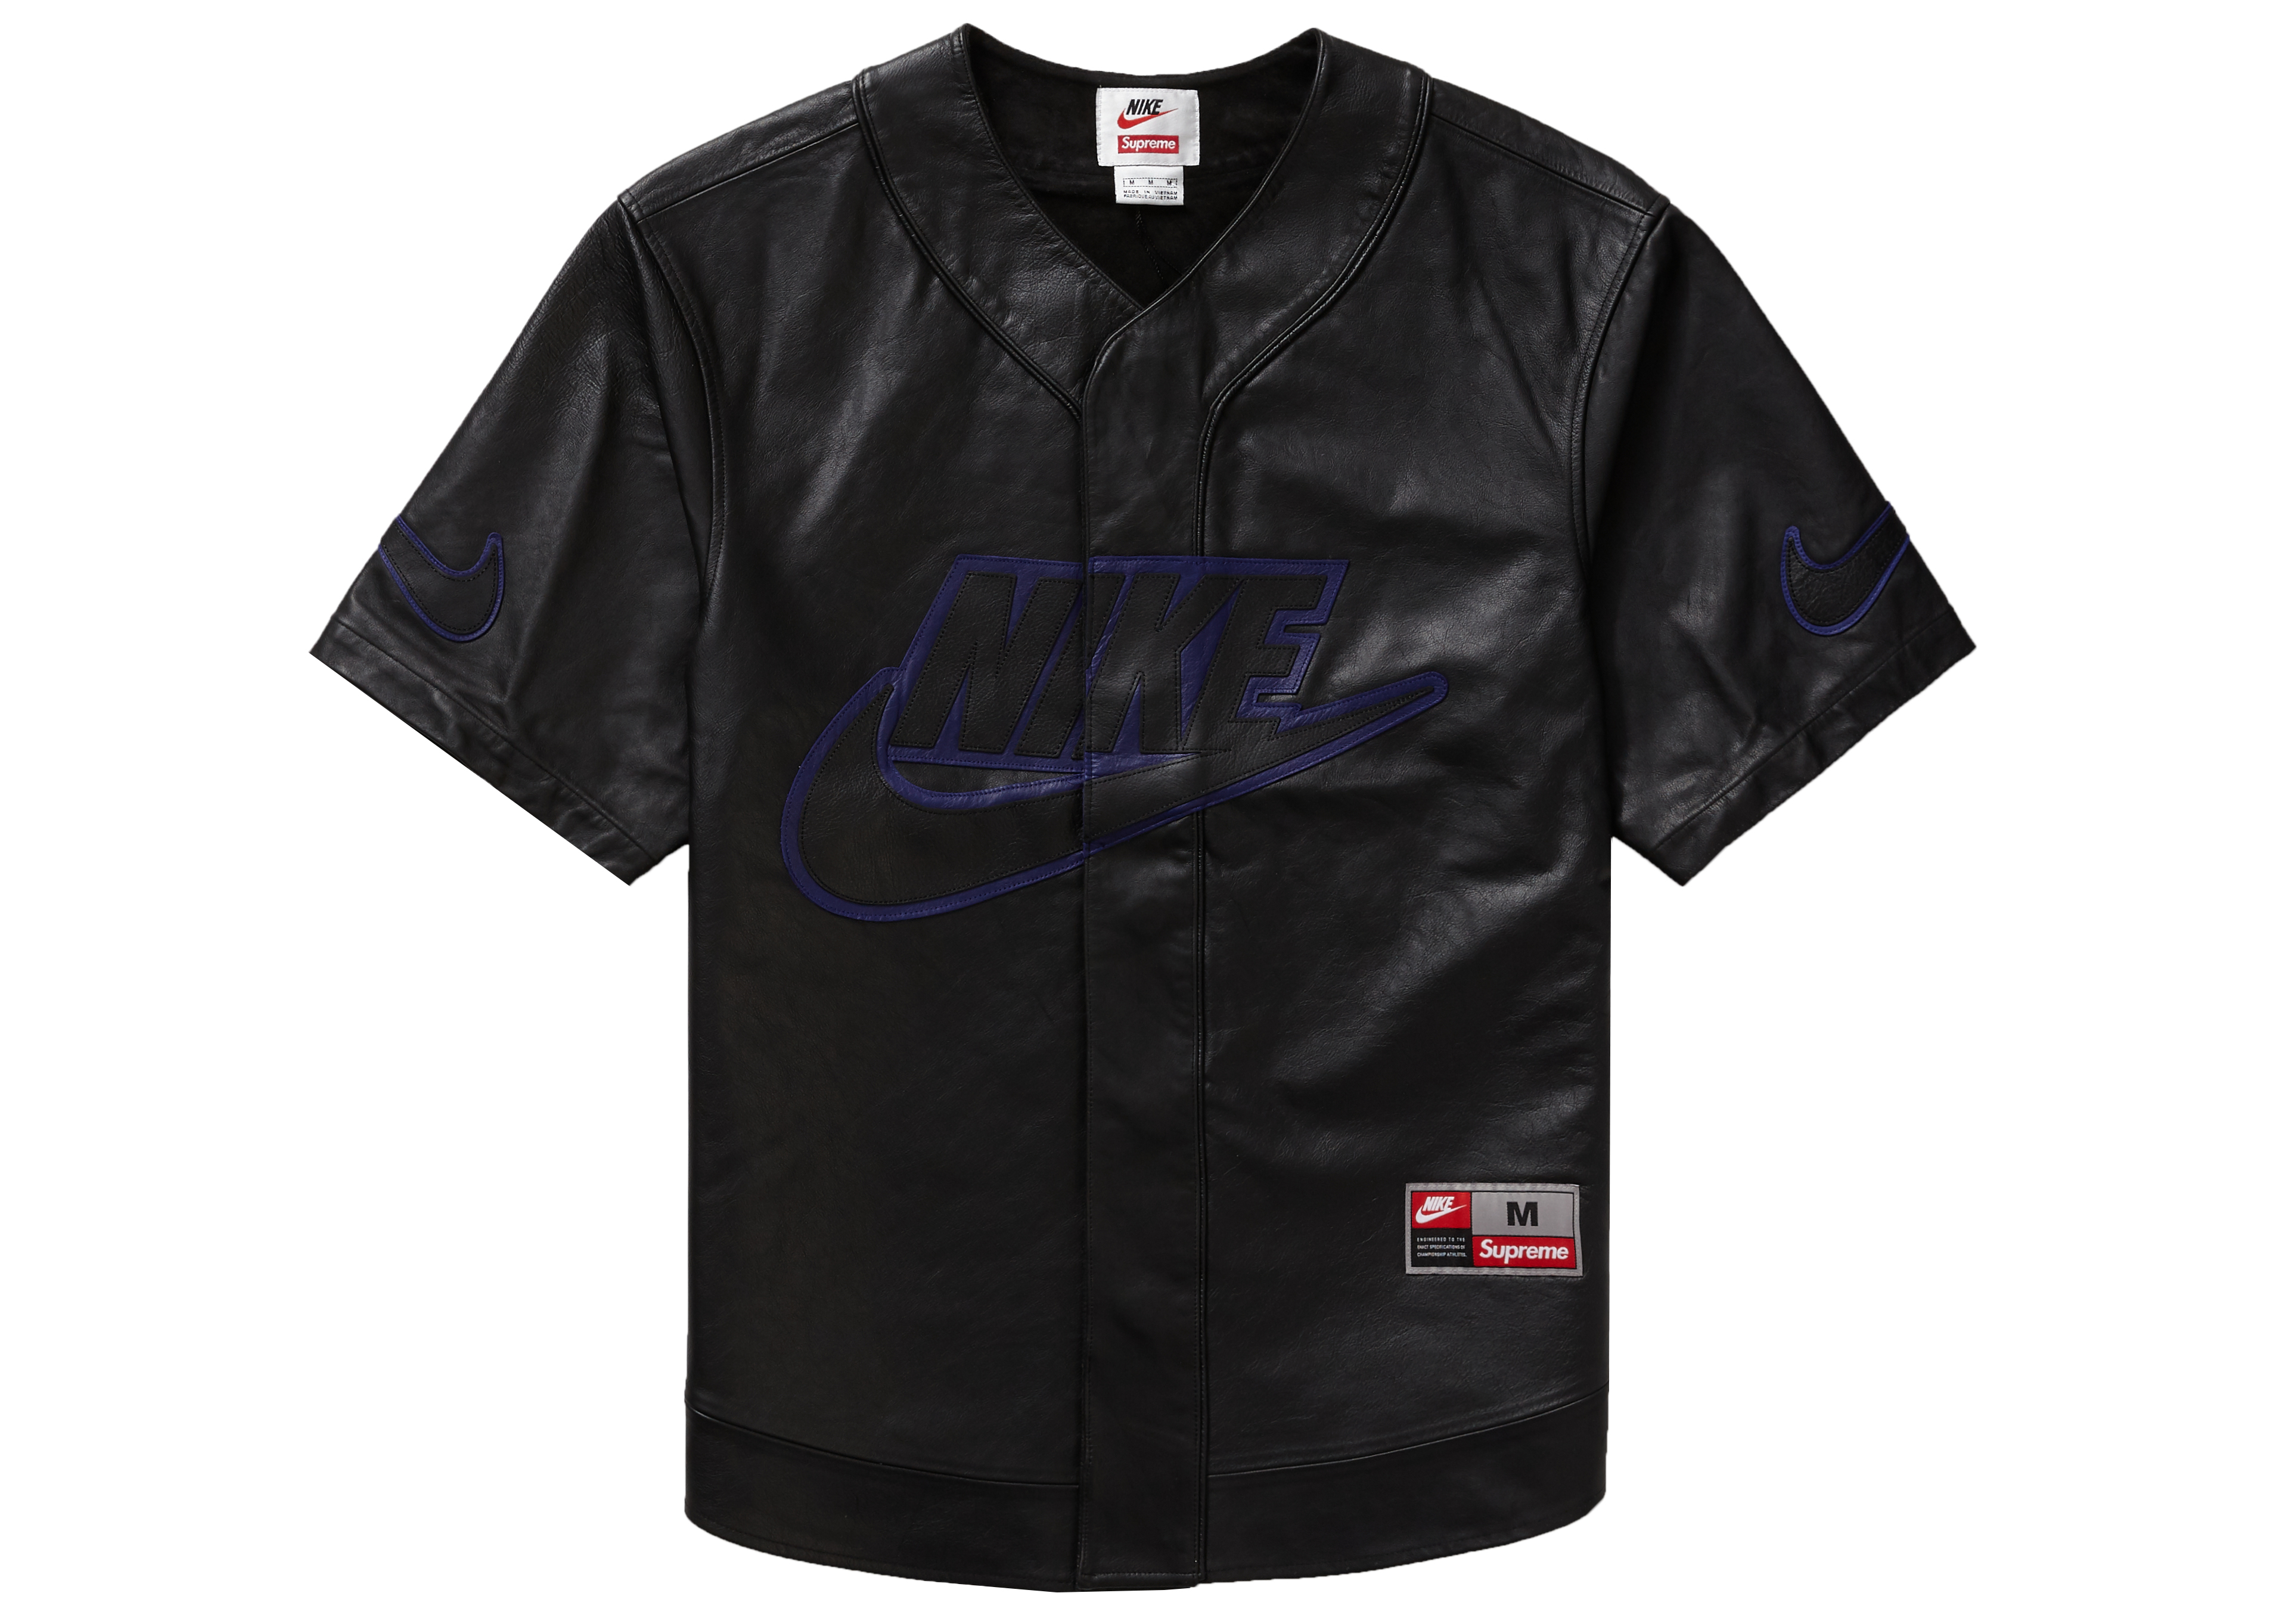 leather nike baseball jersey